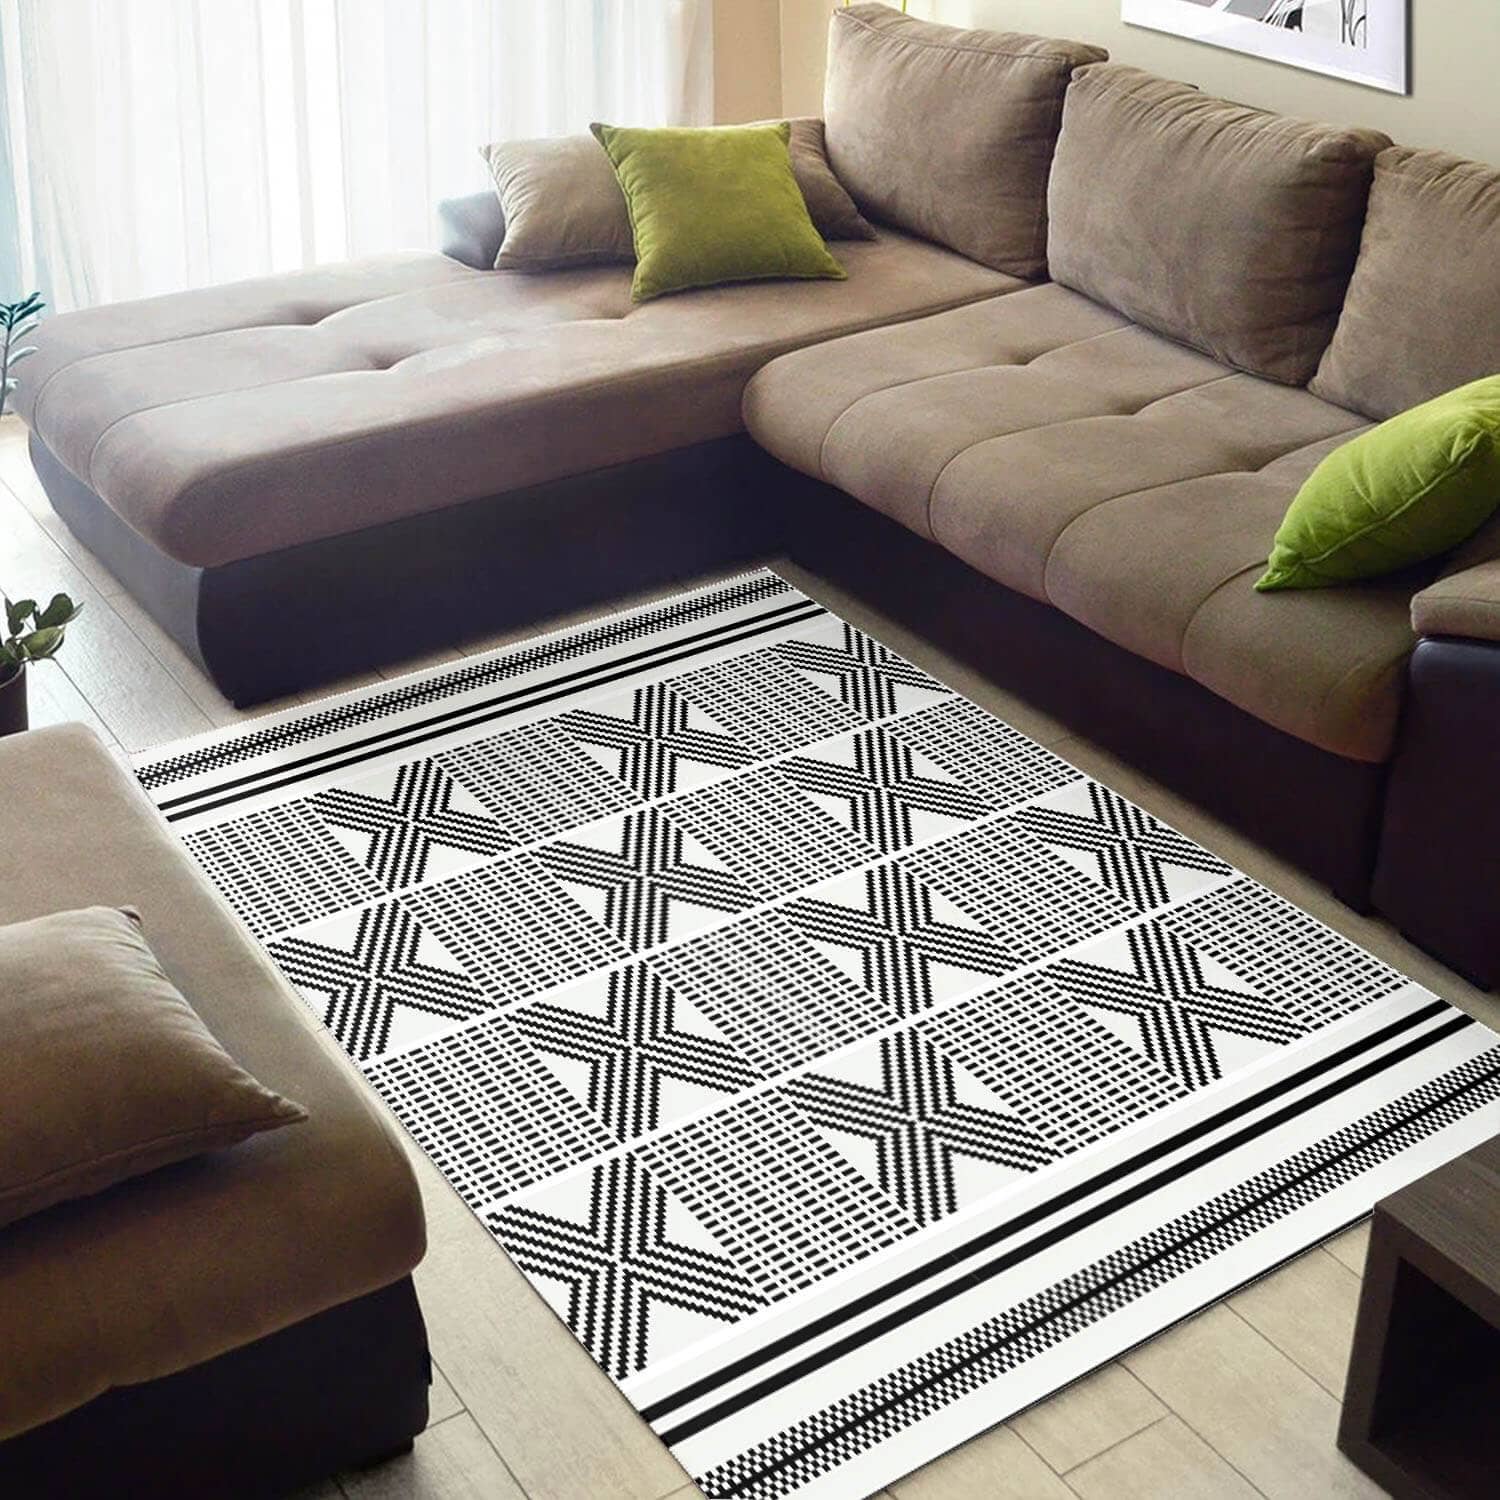 Beautiful African American Vintage Black Art Seamless Pattern Style Floor Living Room Rug